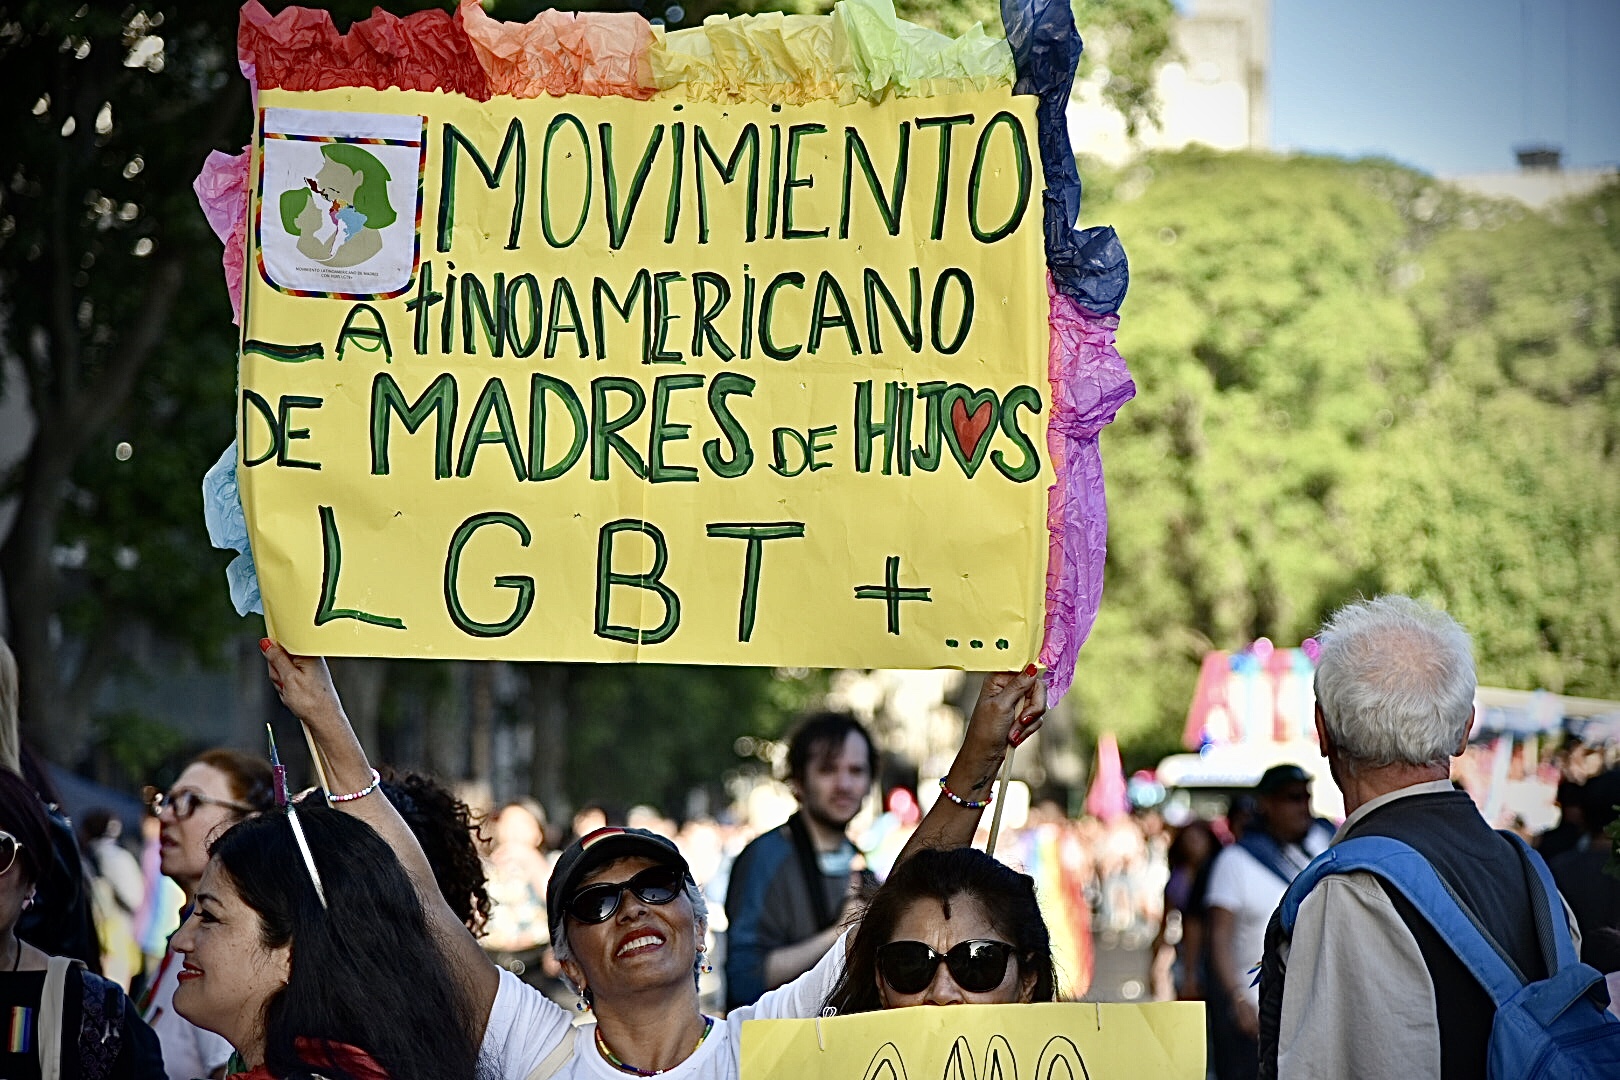 El Movimiento Latinoamericano de Madres de Hijos LGBT+ dijo presente en la Marcha del Orgullo, a pocos días de un momento histórico: mujeres de 14 países fueron parte del primer encuentro del colectivo (Crédito: Ariel Torres)